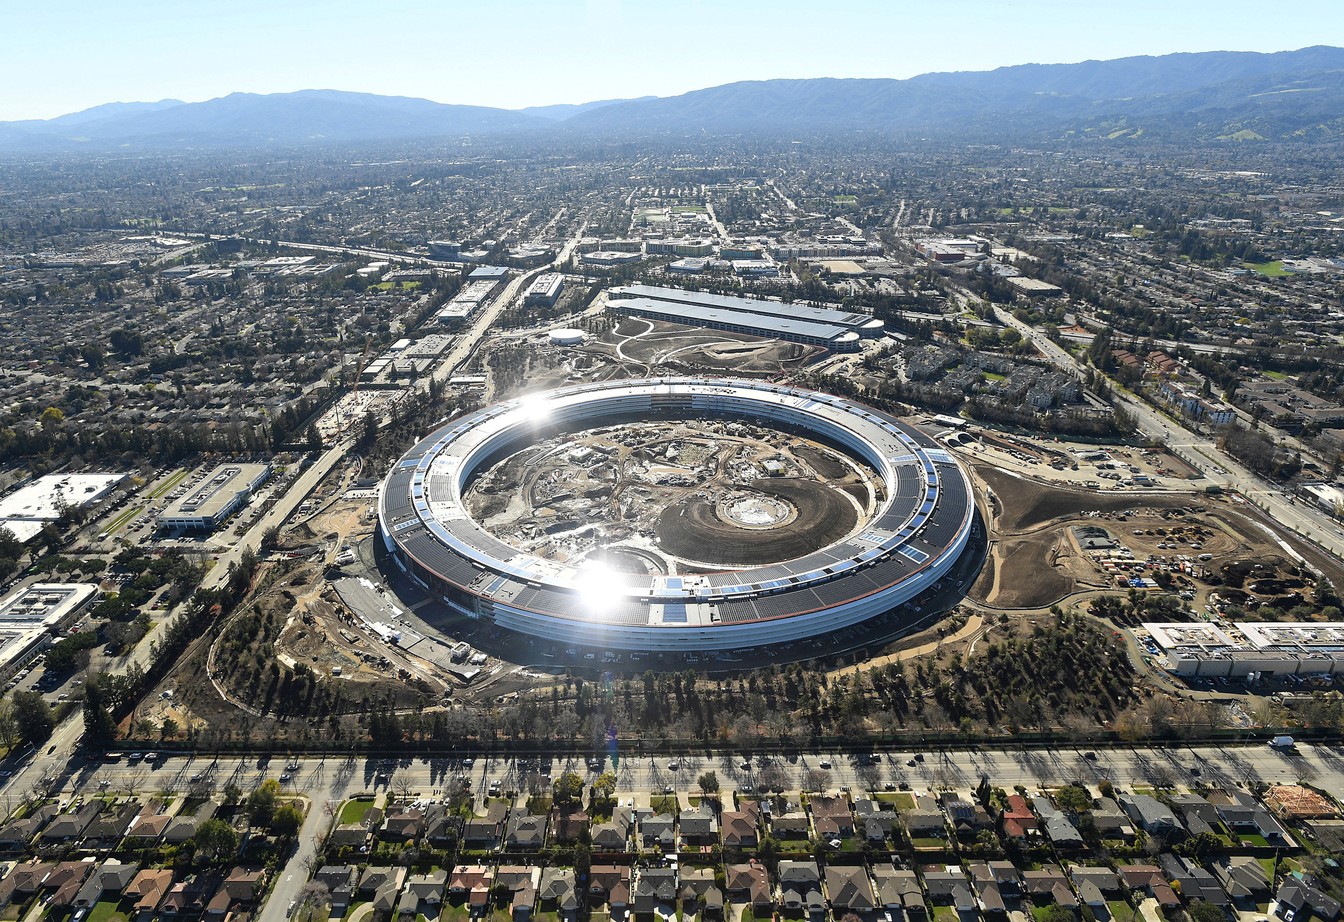 Nova sede da Apple em Cupertino, na Califórnia (EUA), visto ainda em construção em imagem aérea. (Foto: Noah Berger/Reuters)